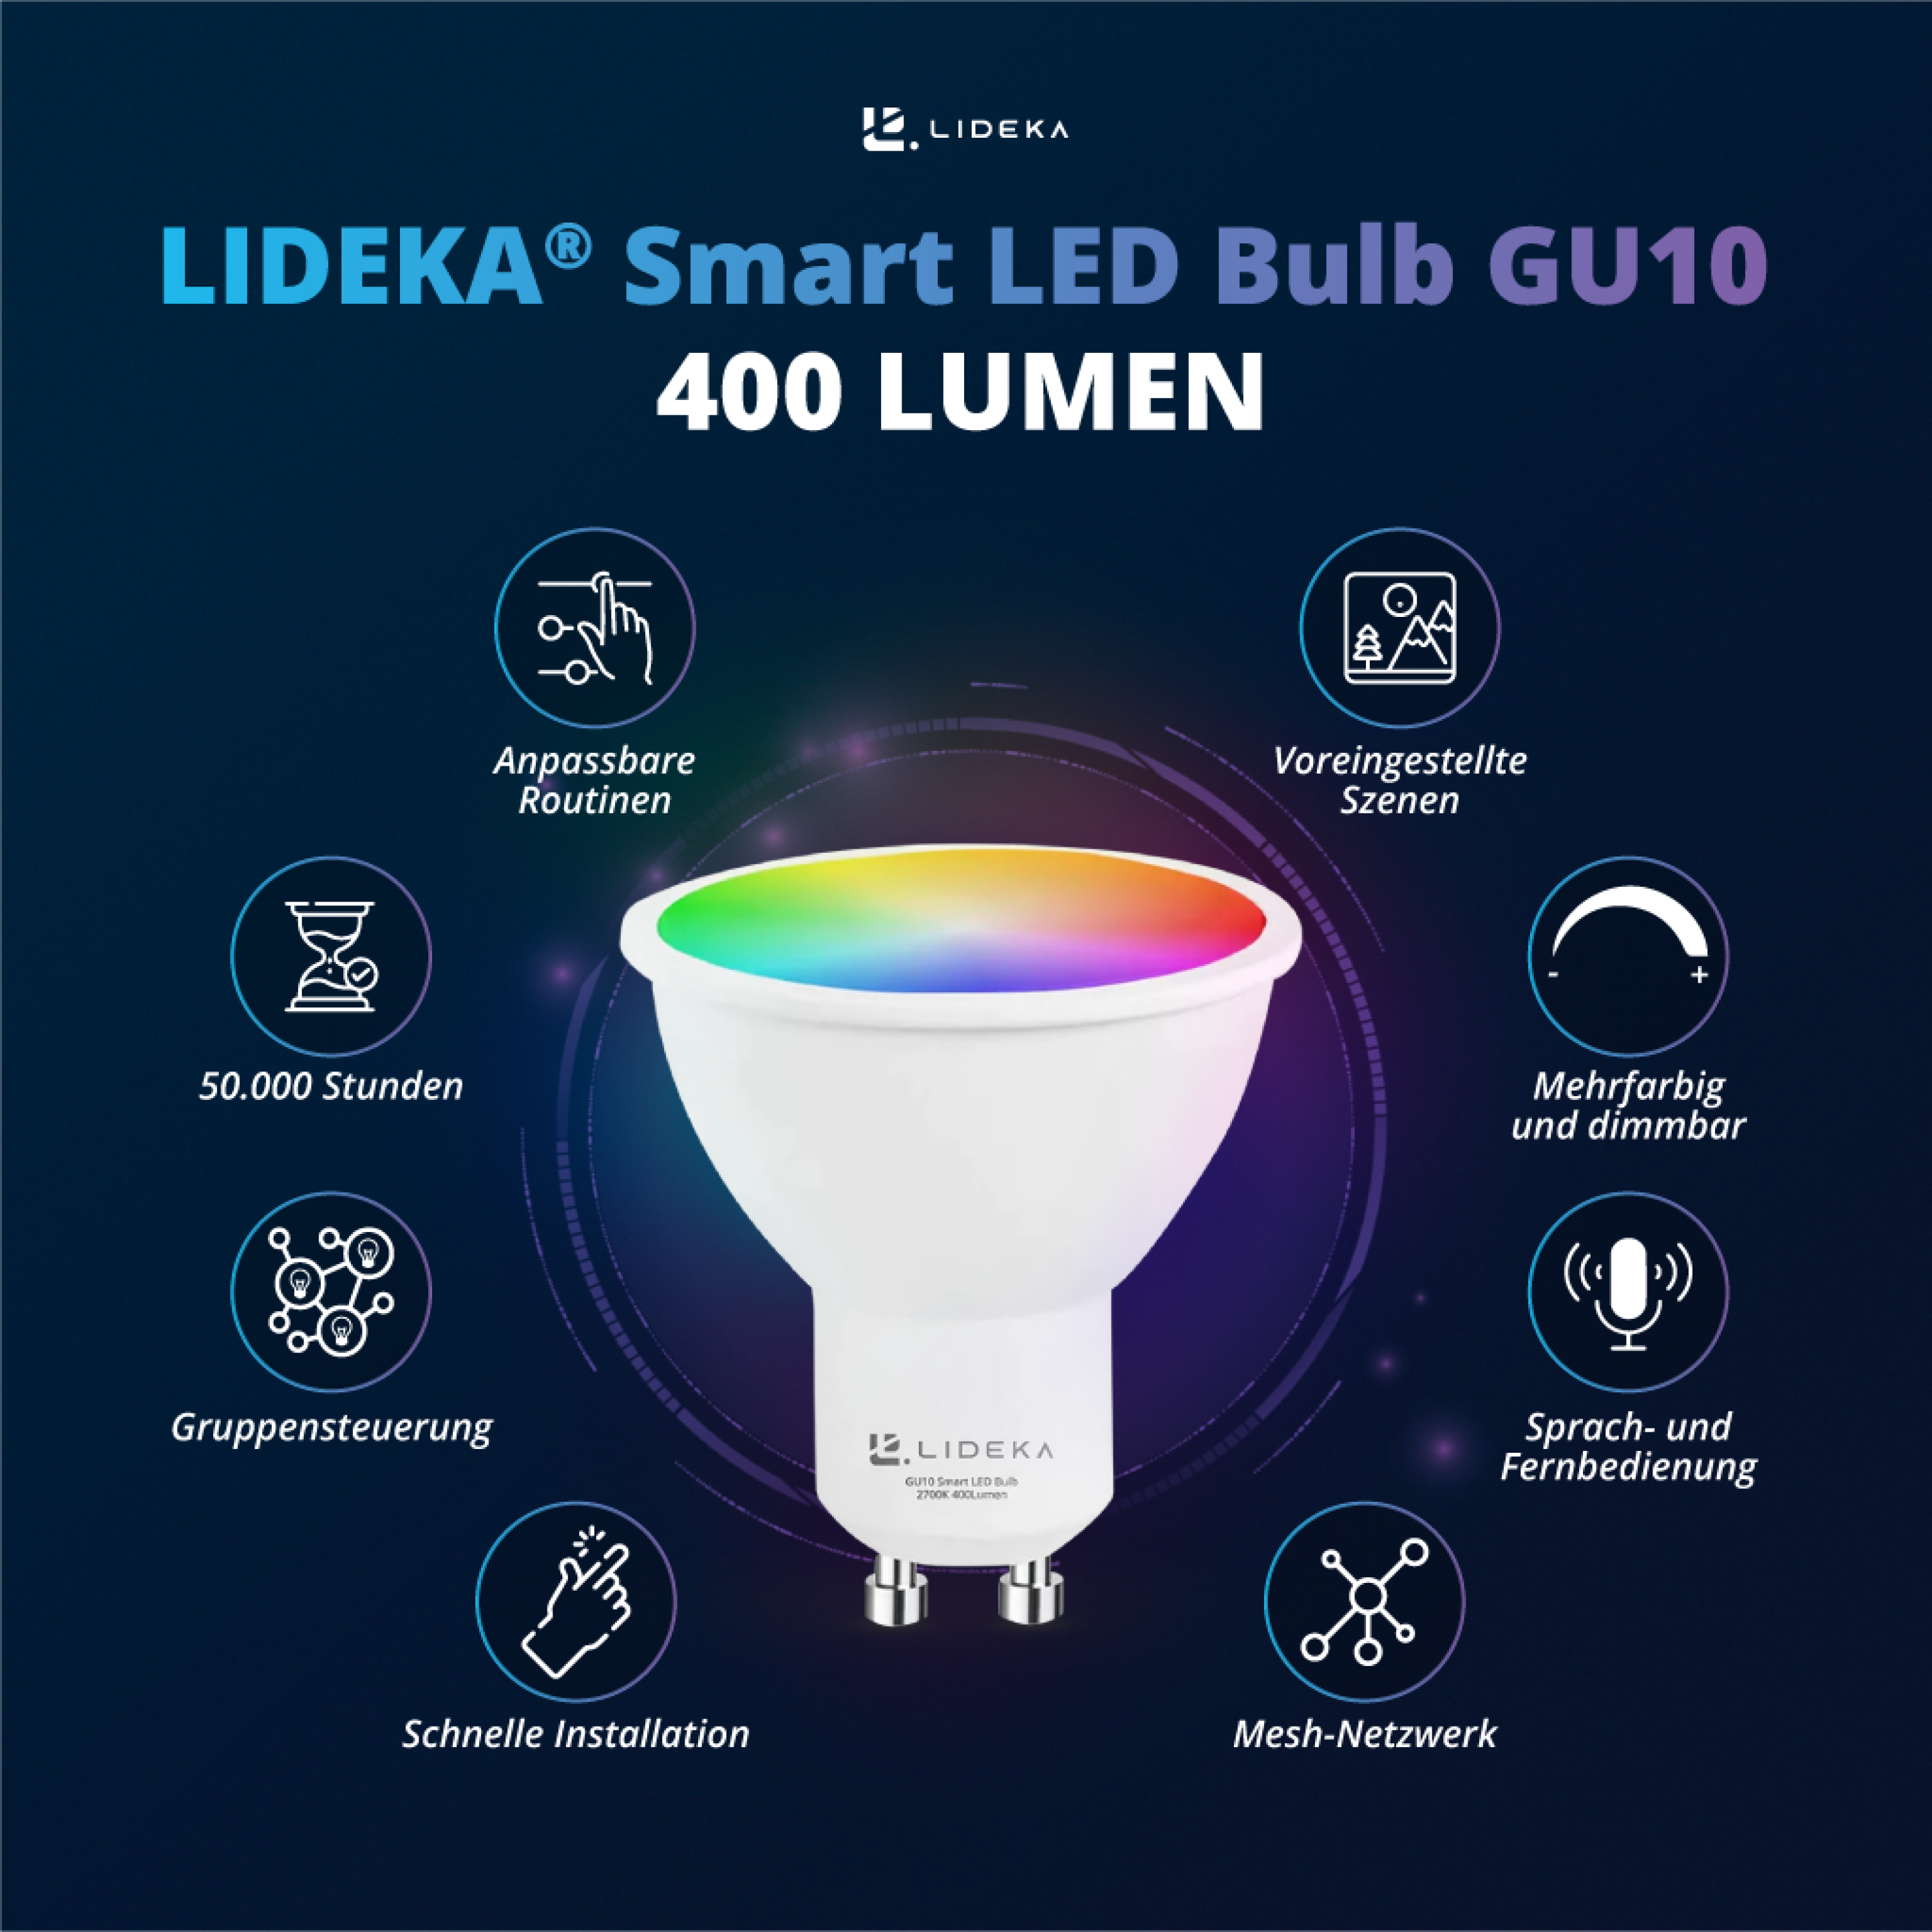 LIDEKA GU10 LED Spot Multicolors GU10 5W Dimmbar Watt Lampen RGB LED-Leuchtmittel 9